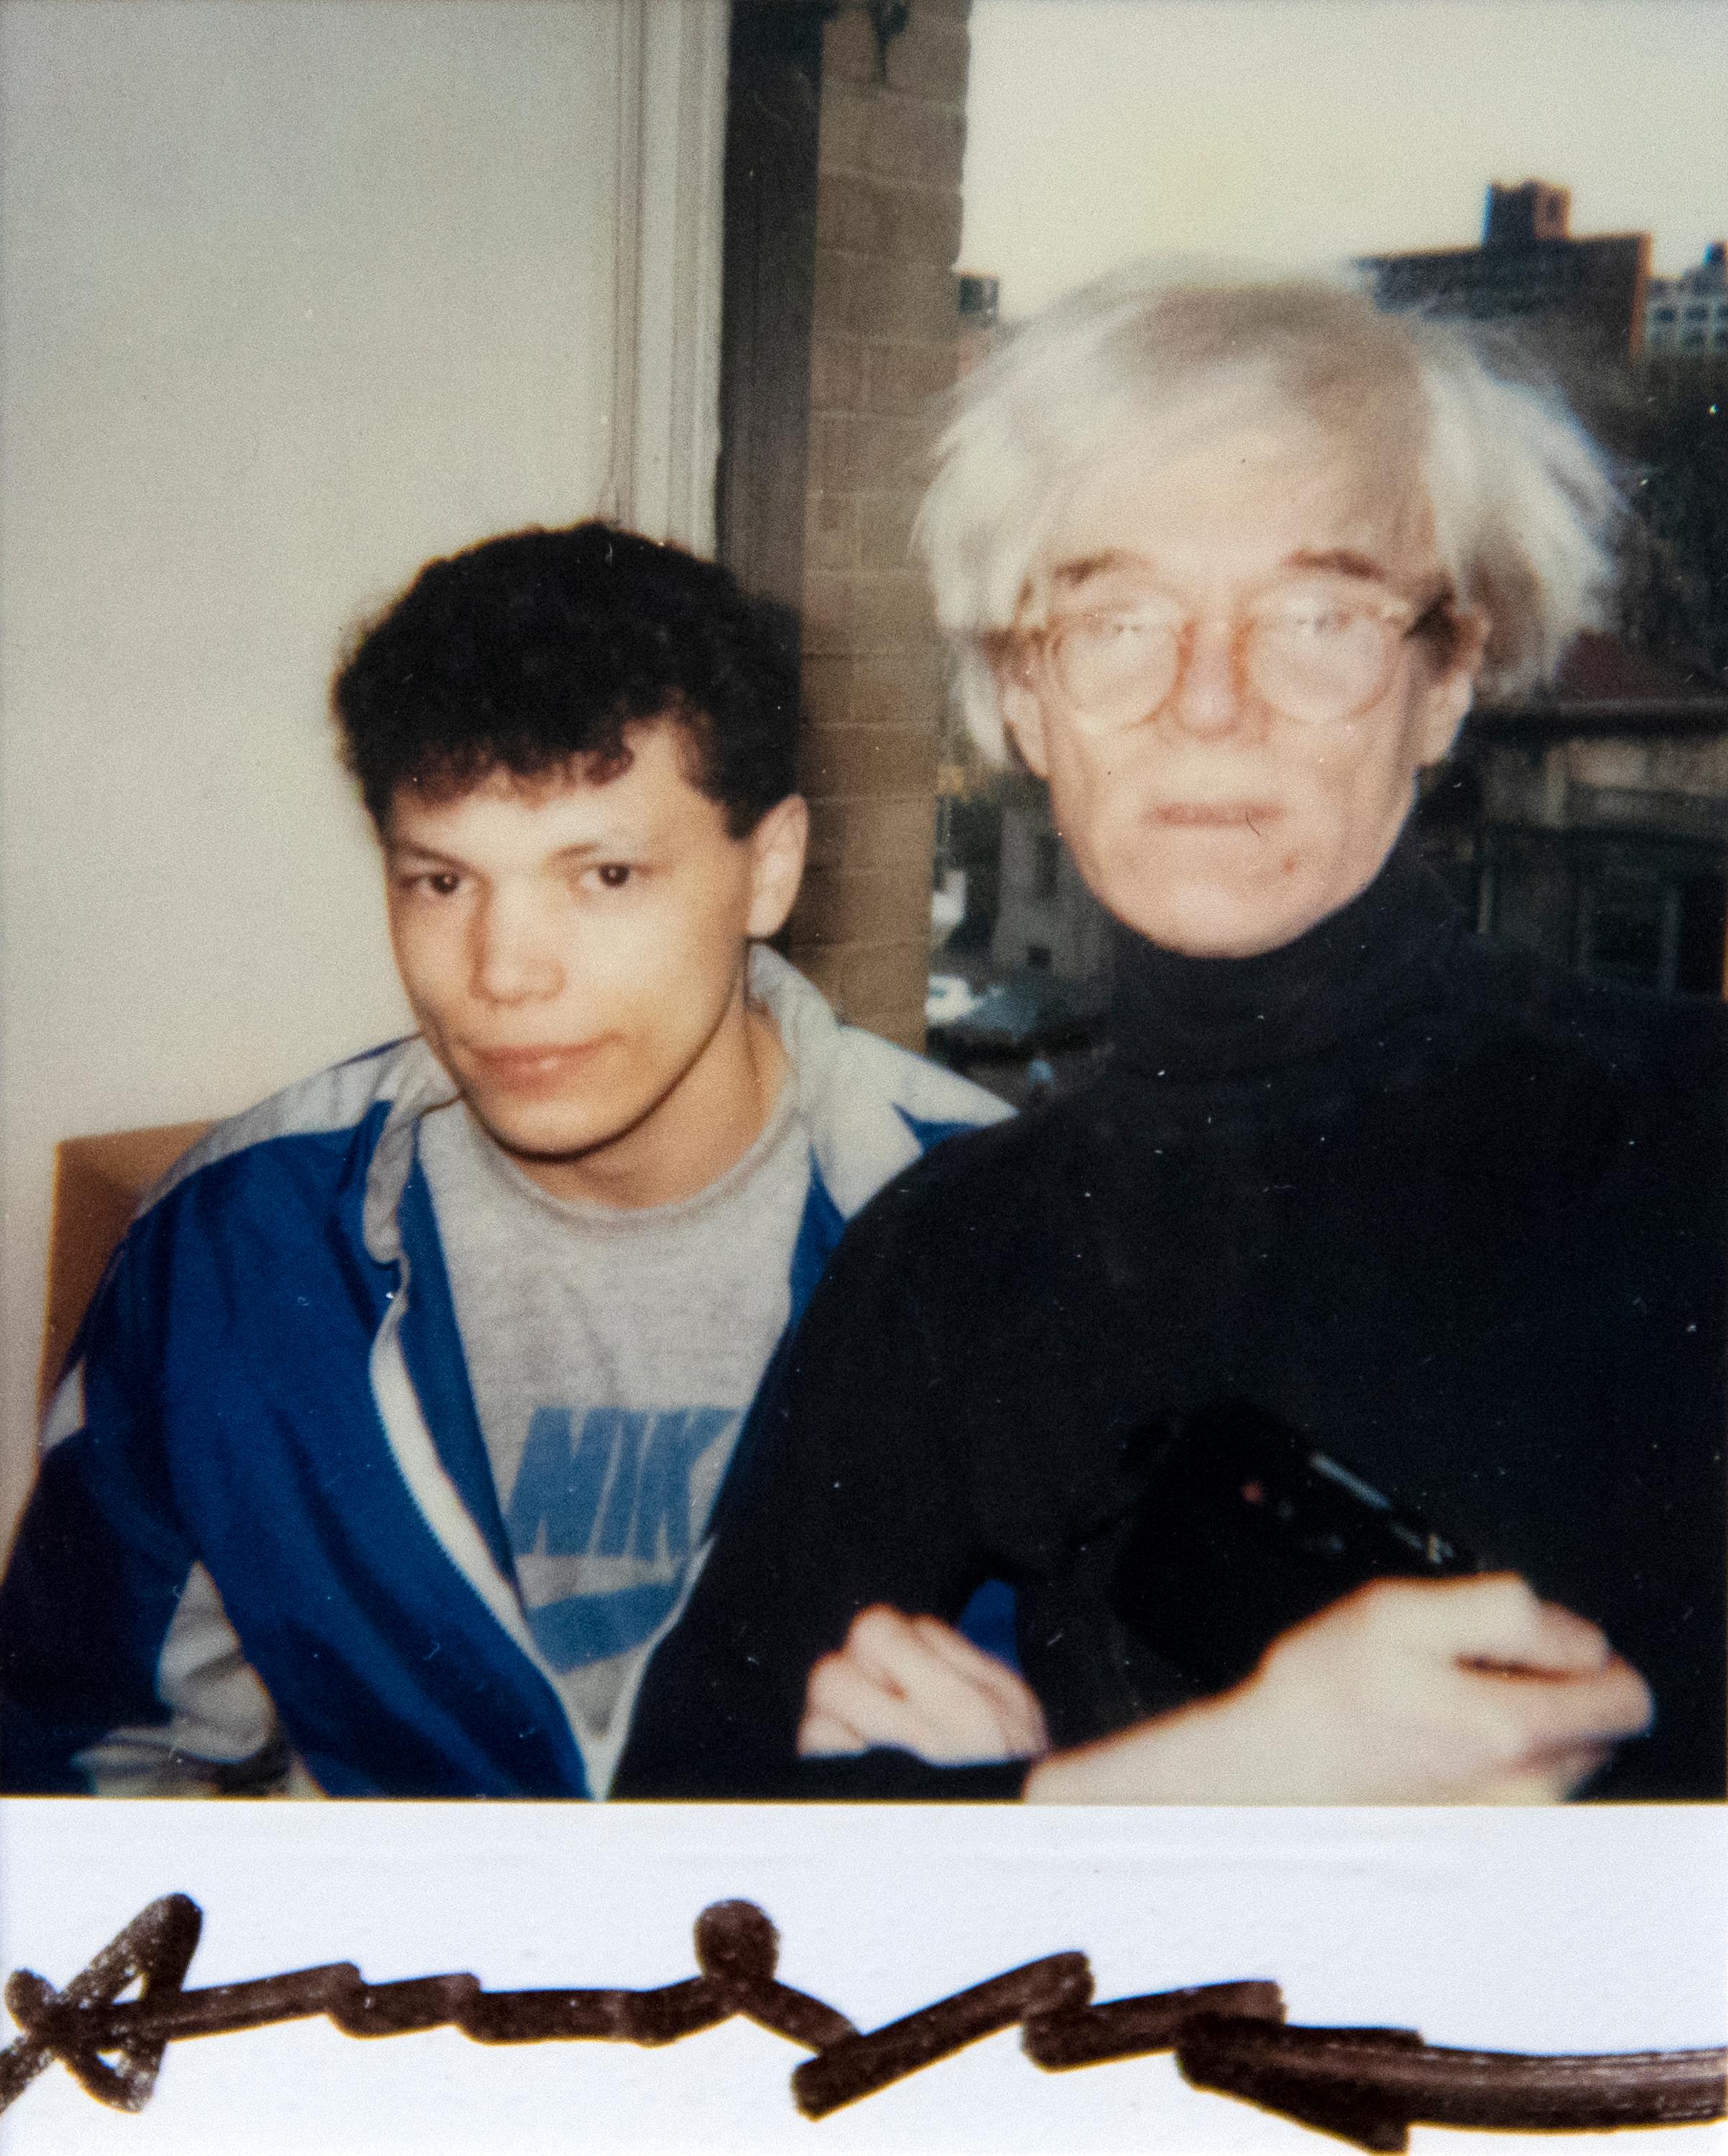 Eine Fotografie von Andy Warhol. "Andy Warhol and Unidentified Man" ist ein Polaroid, Polacolor des amerikanischen Pop-Künstlers Andy Warhol. Das Kunstwerk ist in der unteren Mitte mit "Andy Warhol" signiert und mit FB01.00083 und AWL213